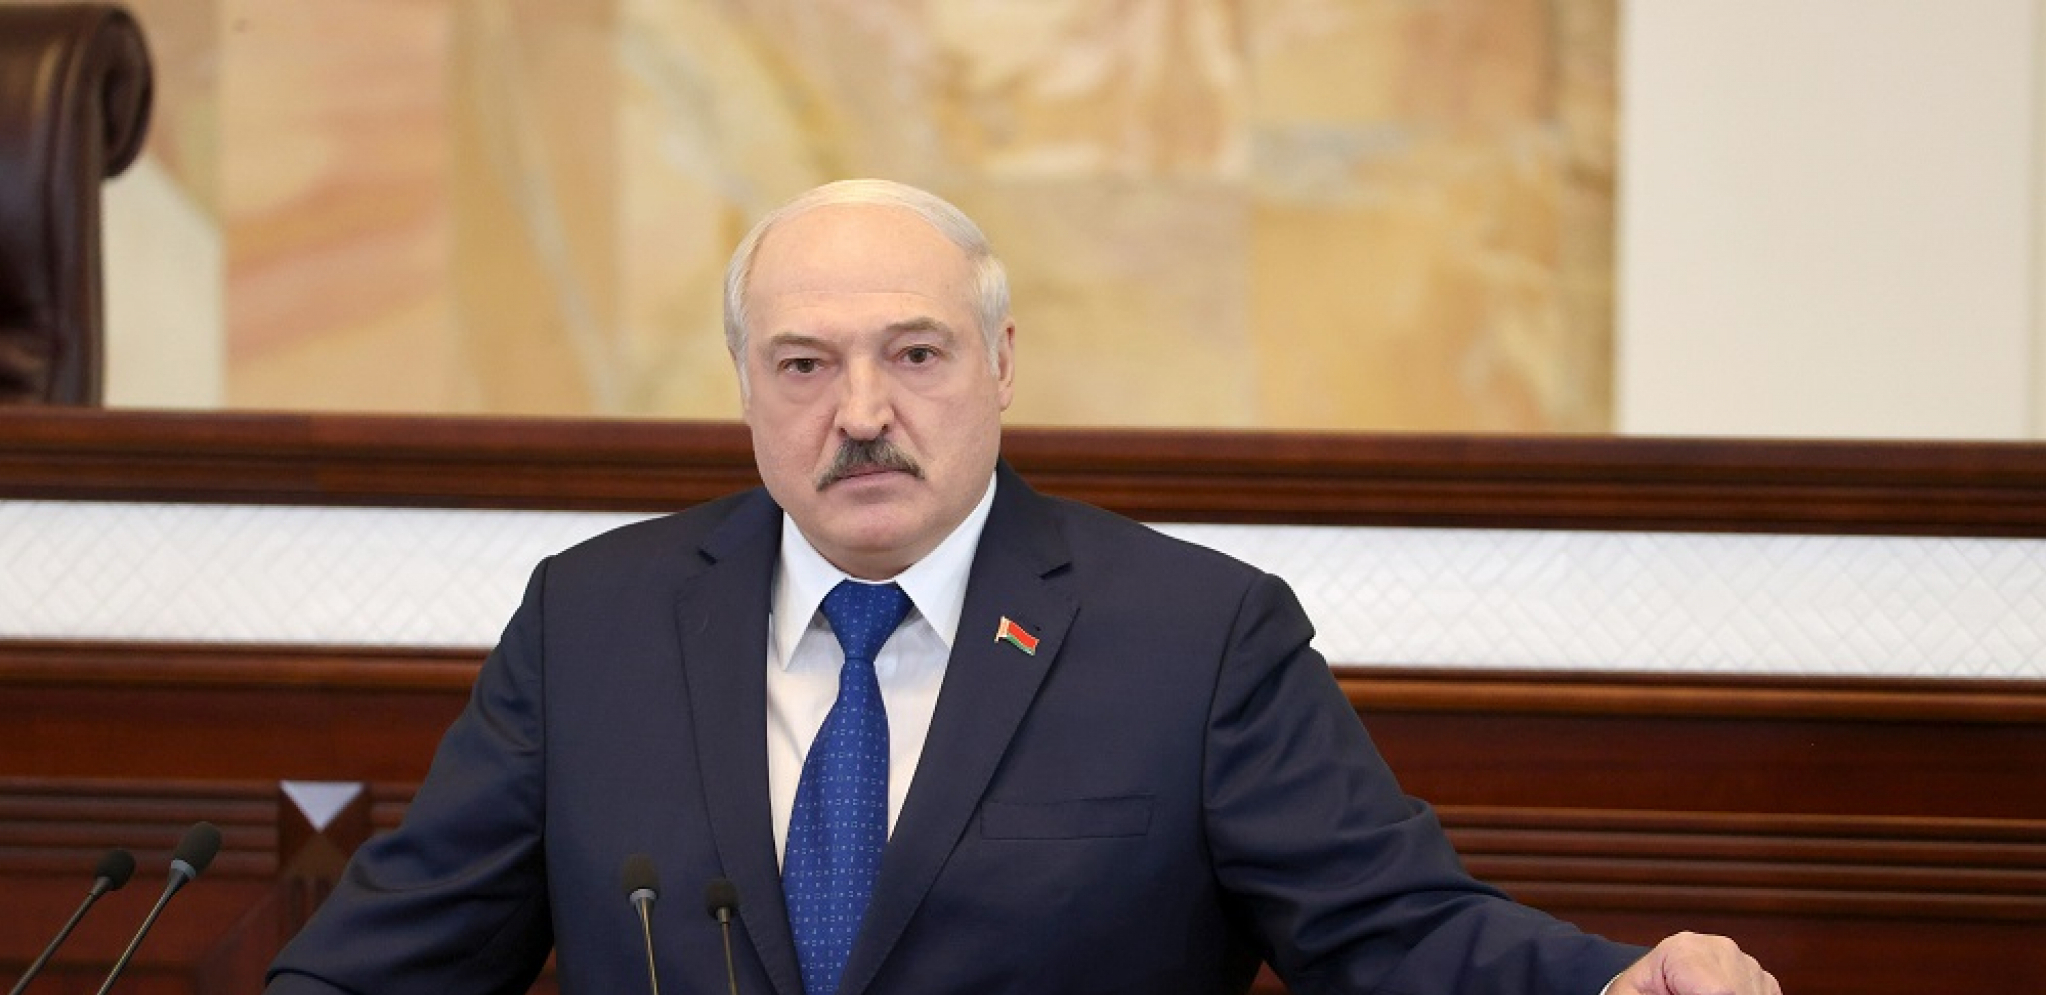 OVO JE OSNOVNI DEMOGRAFSKI PRAVAC Lukašenko dao recept za razvoj nacije